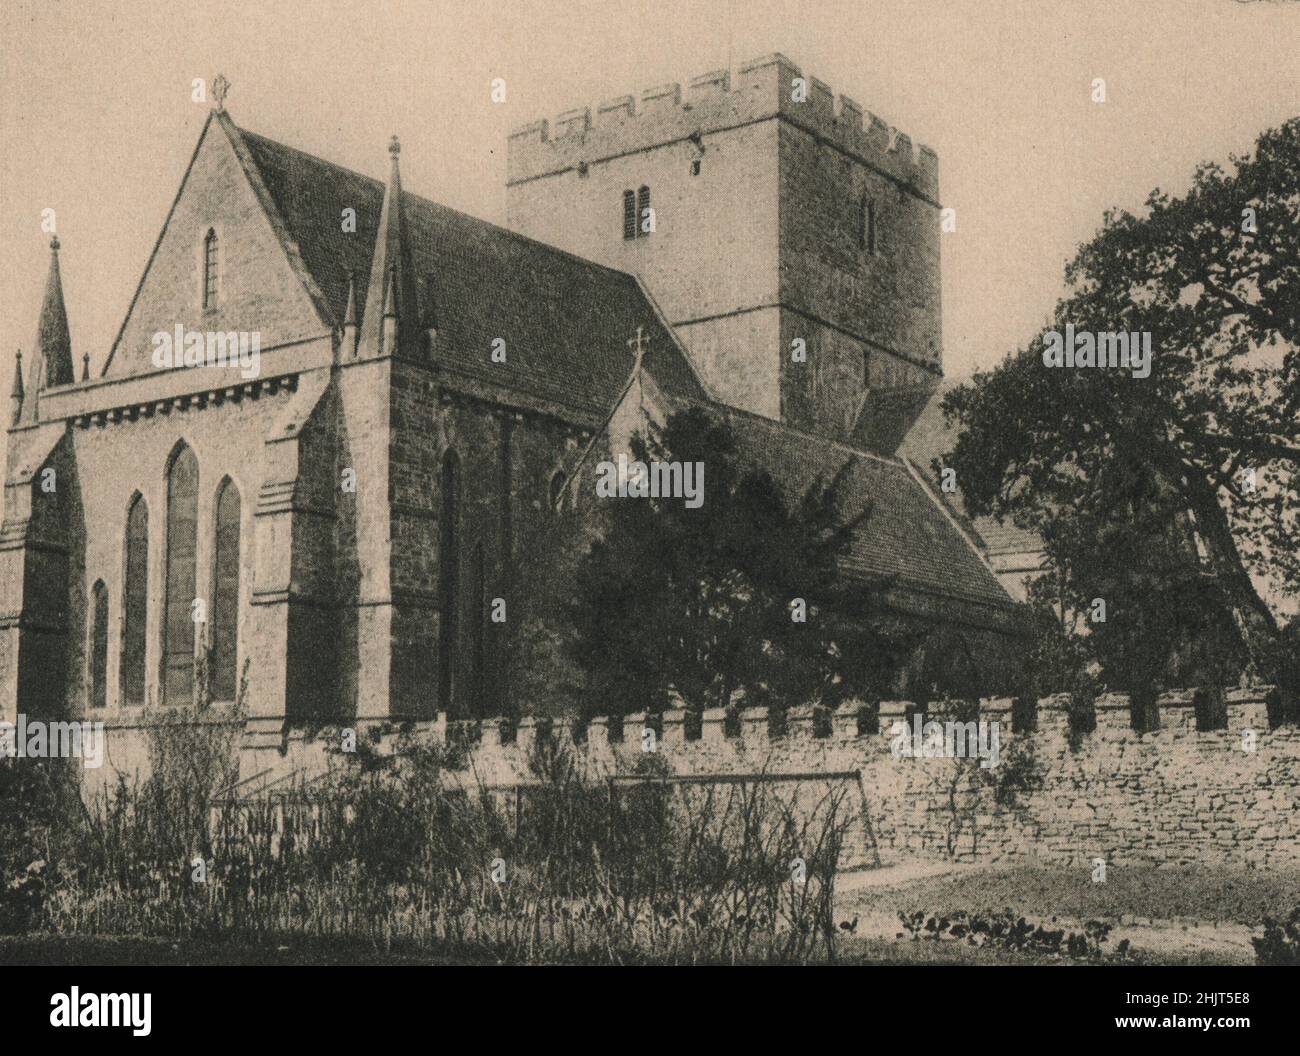 L'ancienne église prieuré de Saint-Jean, reconstruite au XIXe siècle, est maintenant la cathédrale du diocèse de Swansea et de Brecon. Pays de Galles (1923) Banque D'Images